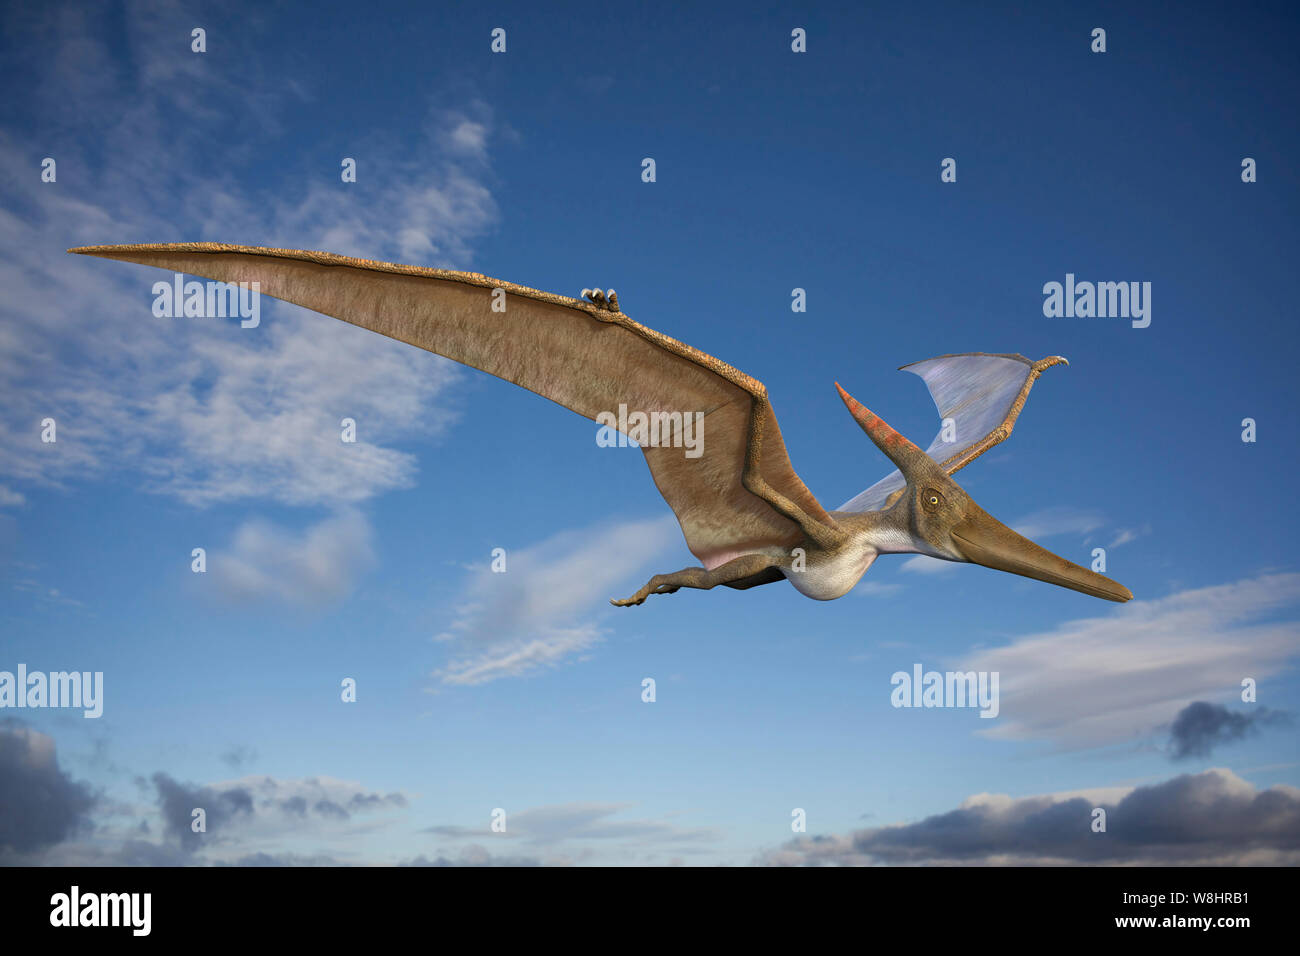 Pteranodon en vol, de l'illustration. Ces reptiles volants vivait pendant le Crétacé tardif, environ 86-85 millions d'années. Banque D'Images